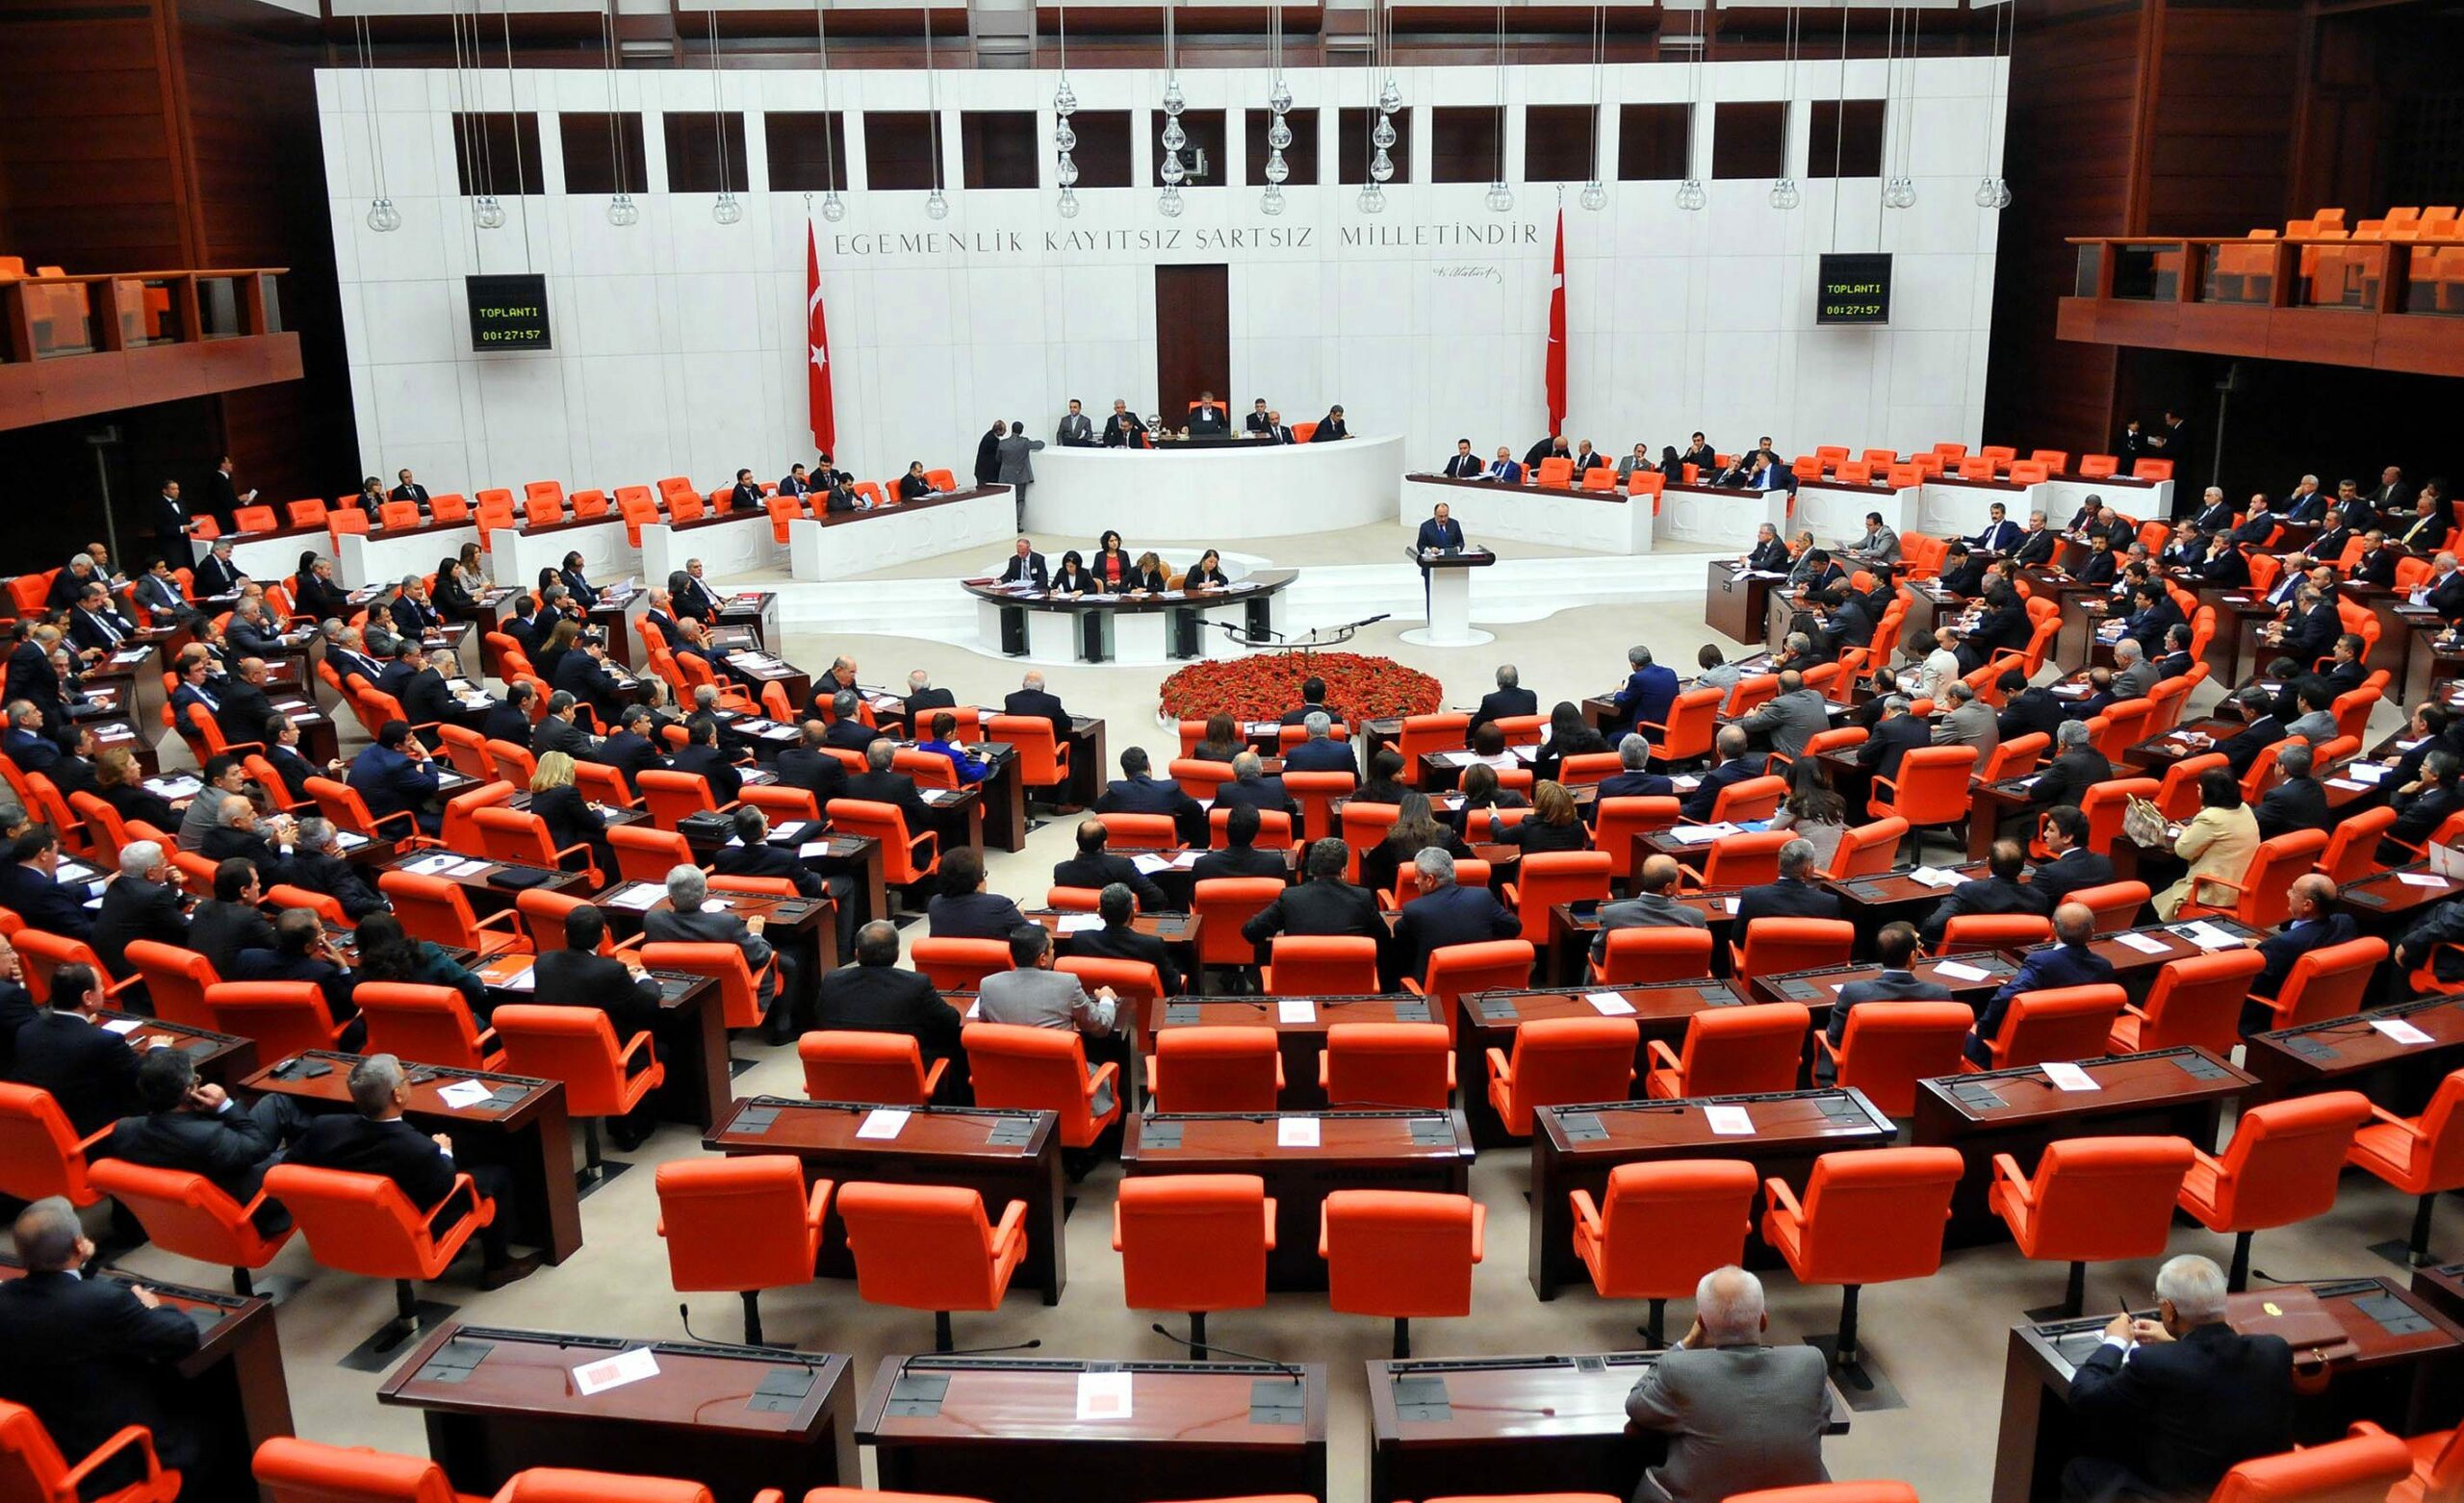 “Eski Parlamenterlerin Kamuoyu Açıklaması” - Turkiye Buyuk Millet Meclisi scaled